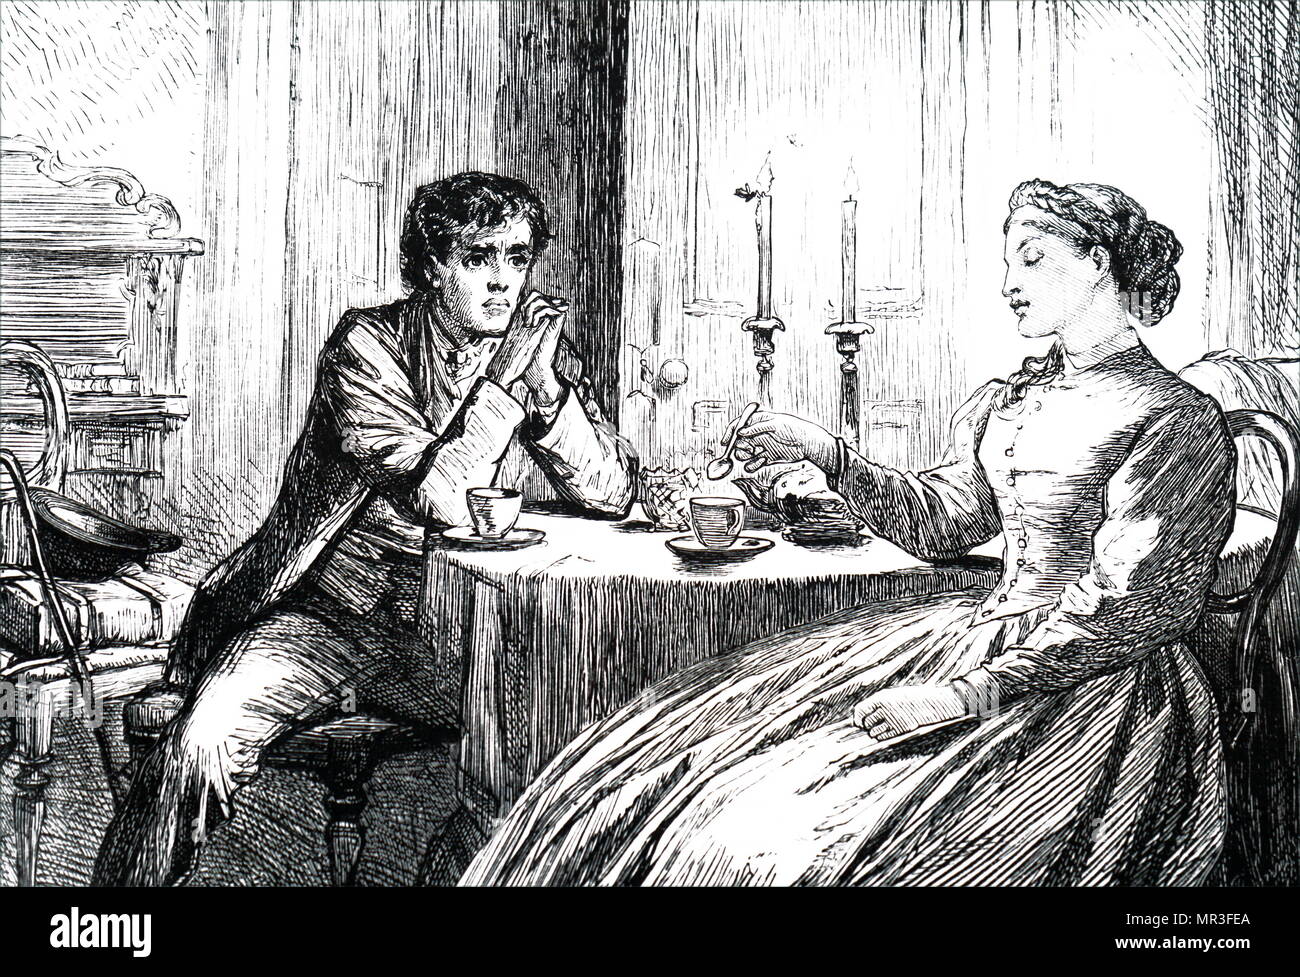 Cartoon titulado 'La Polilla alrededor de la vela". Un hombre joven besotted y dibuja a una mujer como inevitablemente como una polilla singes en la llama de una vela. Fecha del siglo XIX Foto de stock